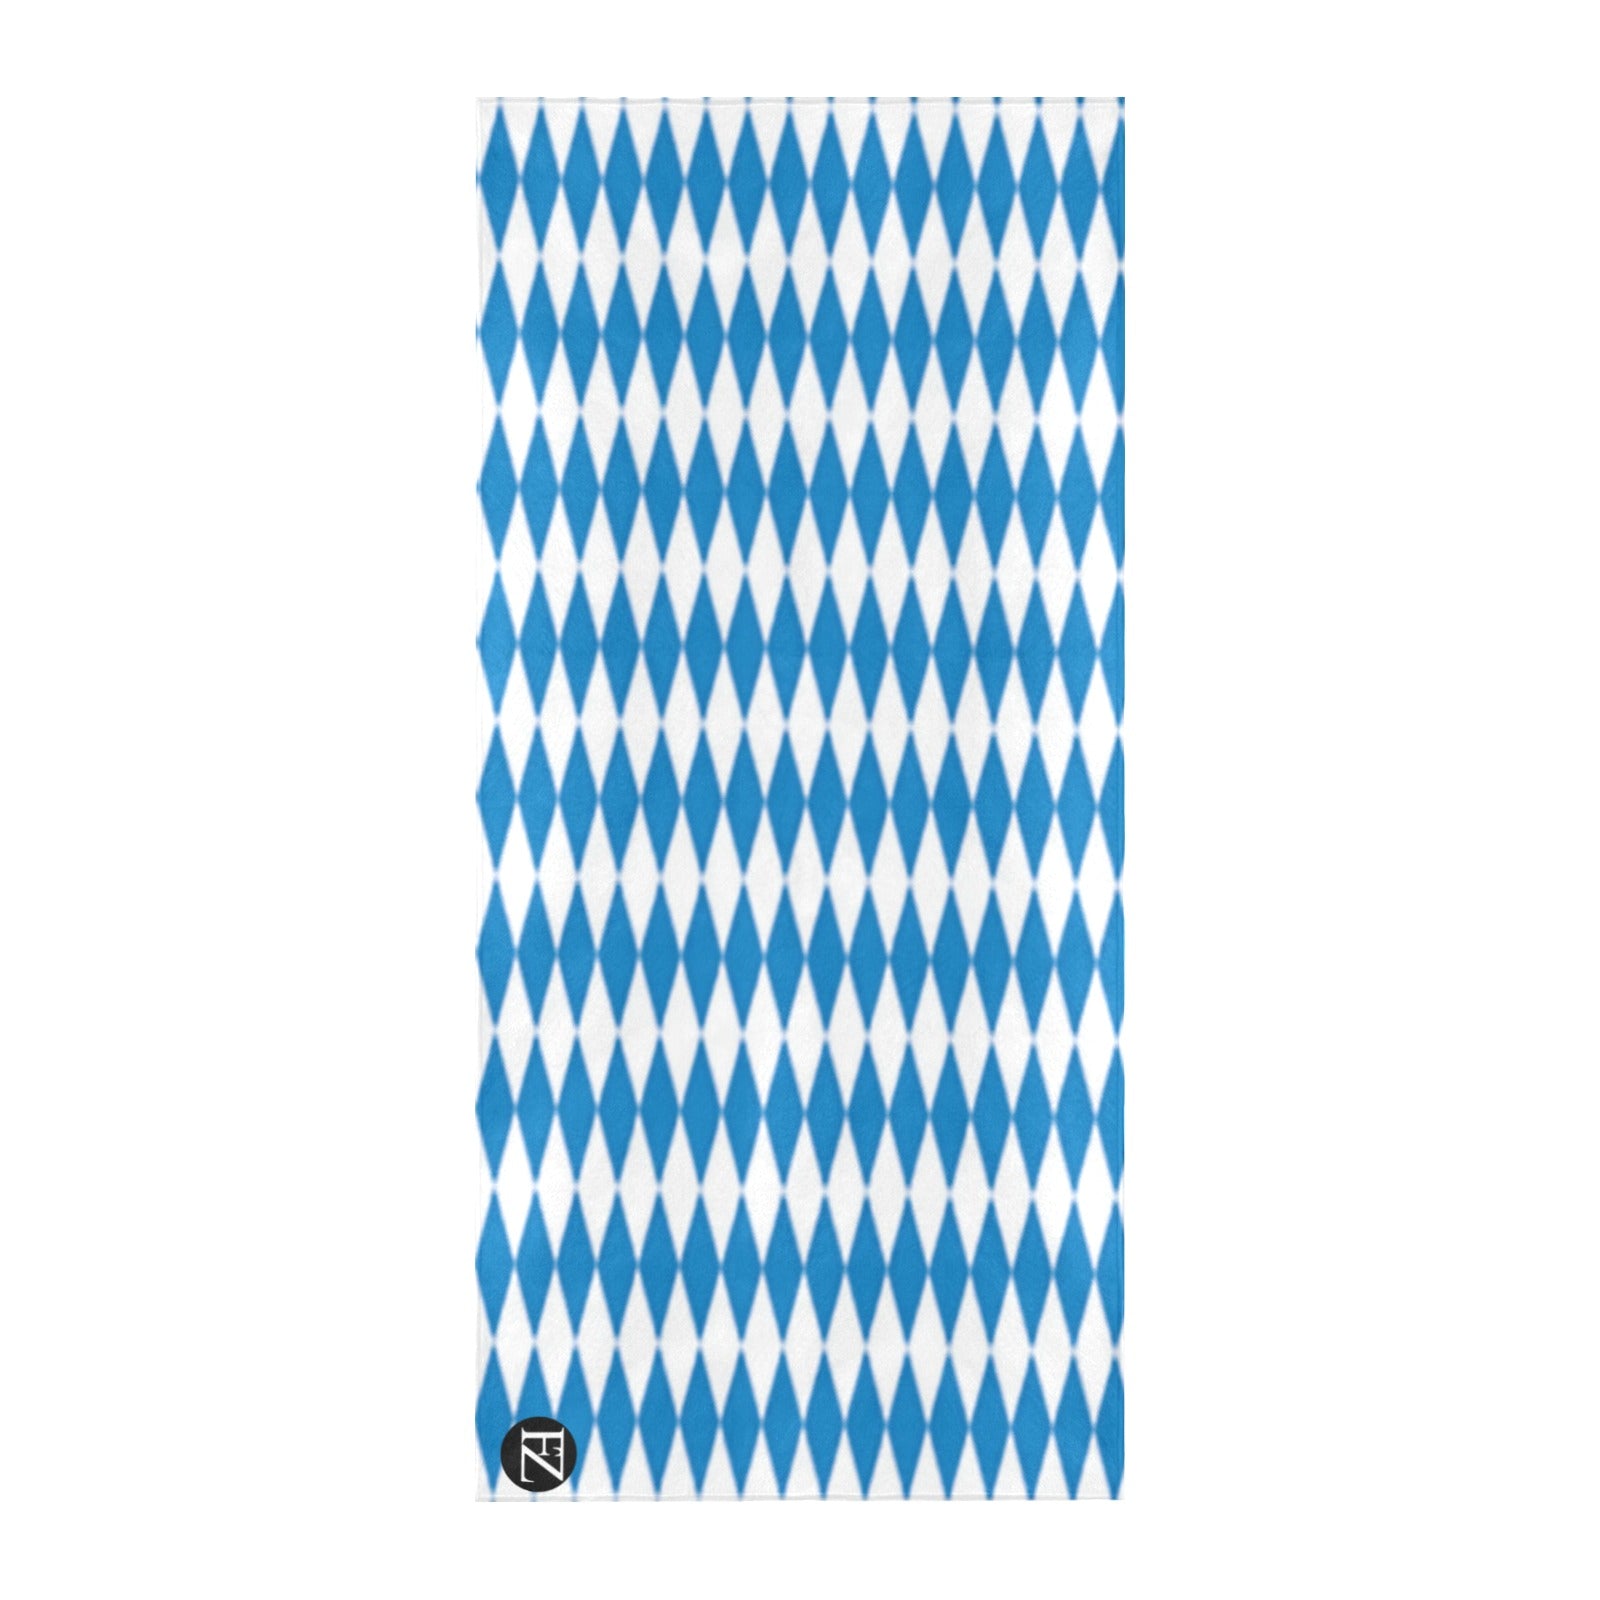 fz beach towel - blue diamond beach towel 32"x 71"(made in queen)